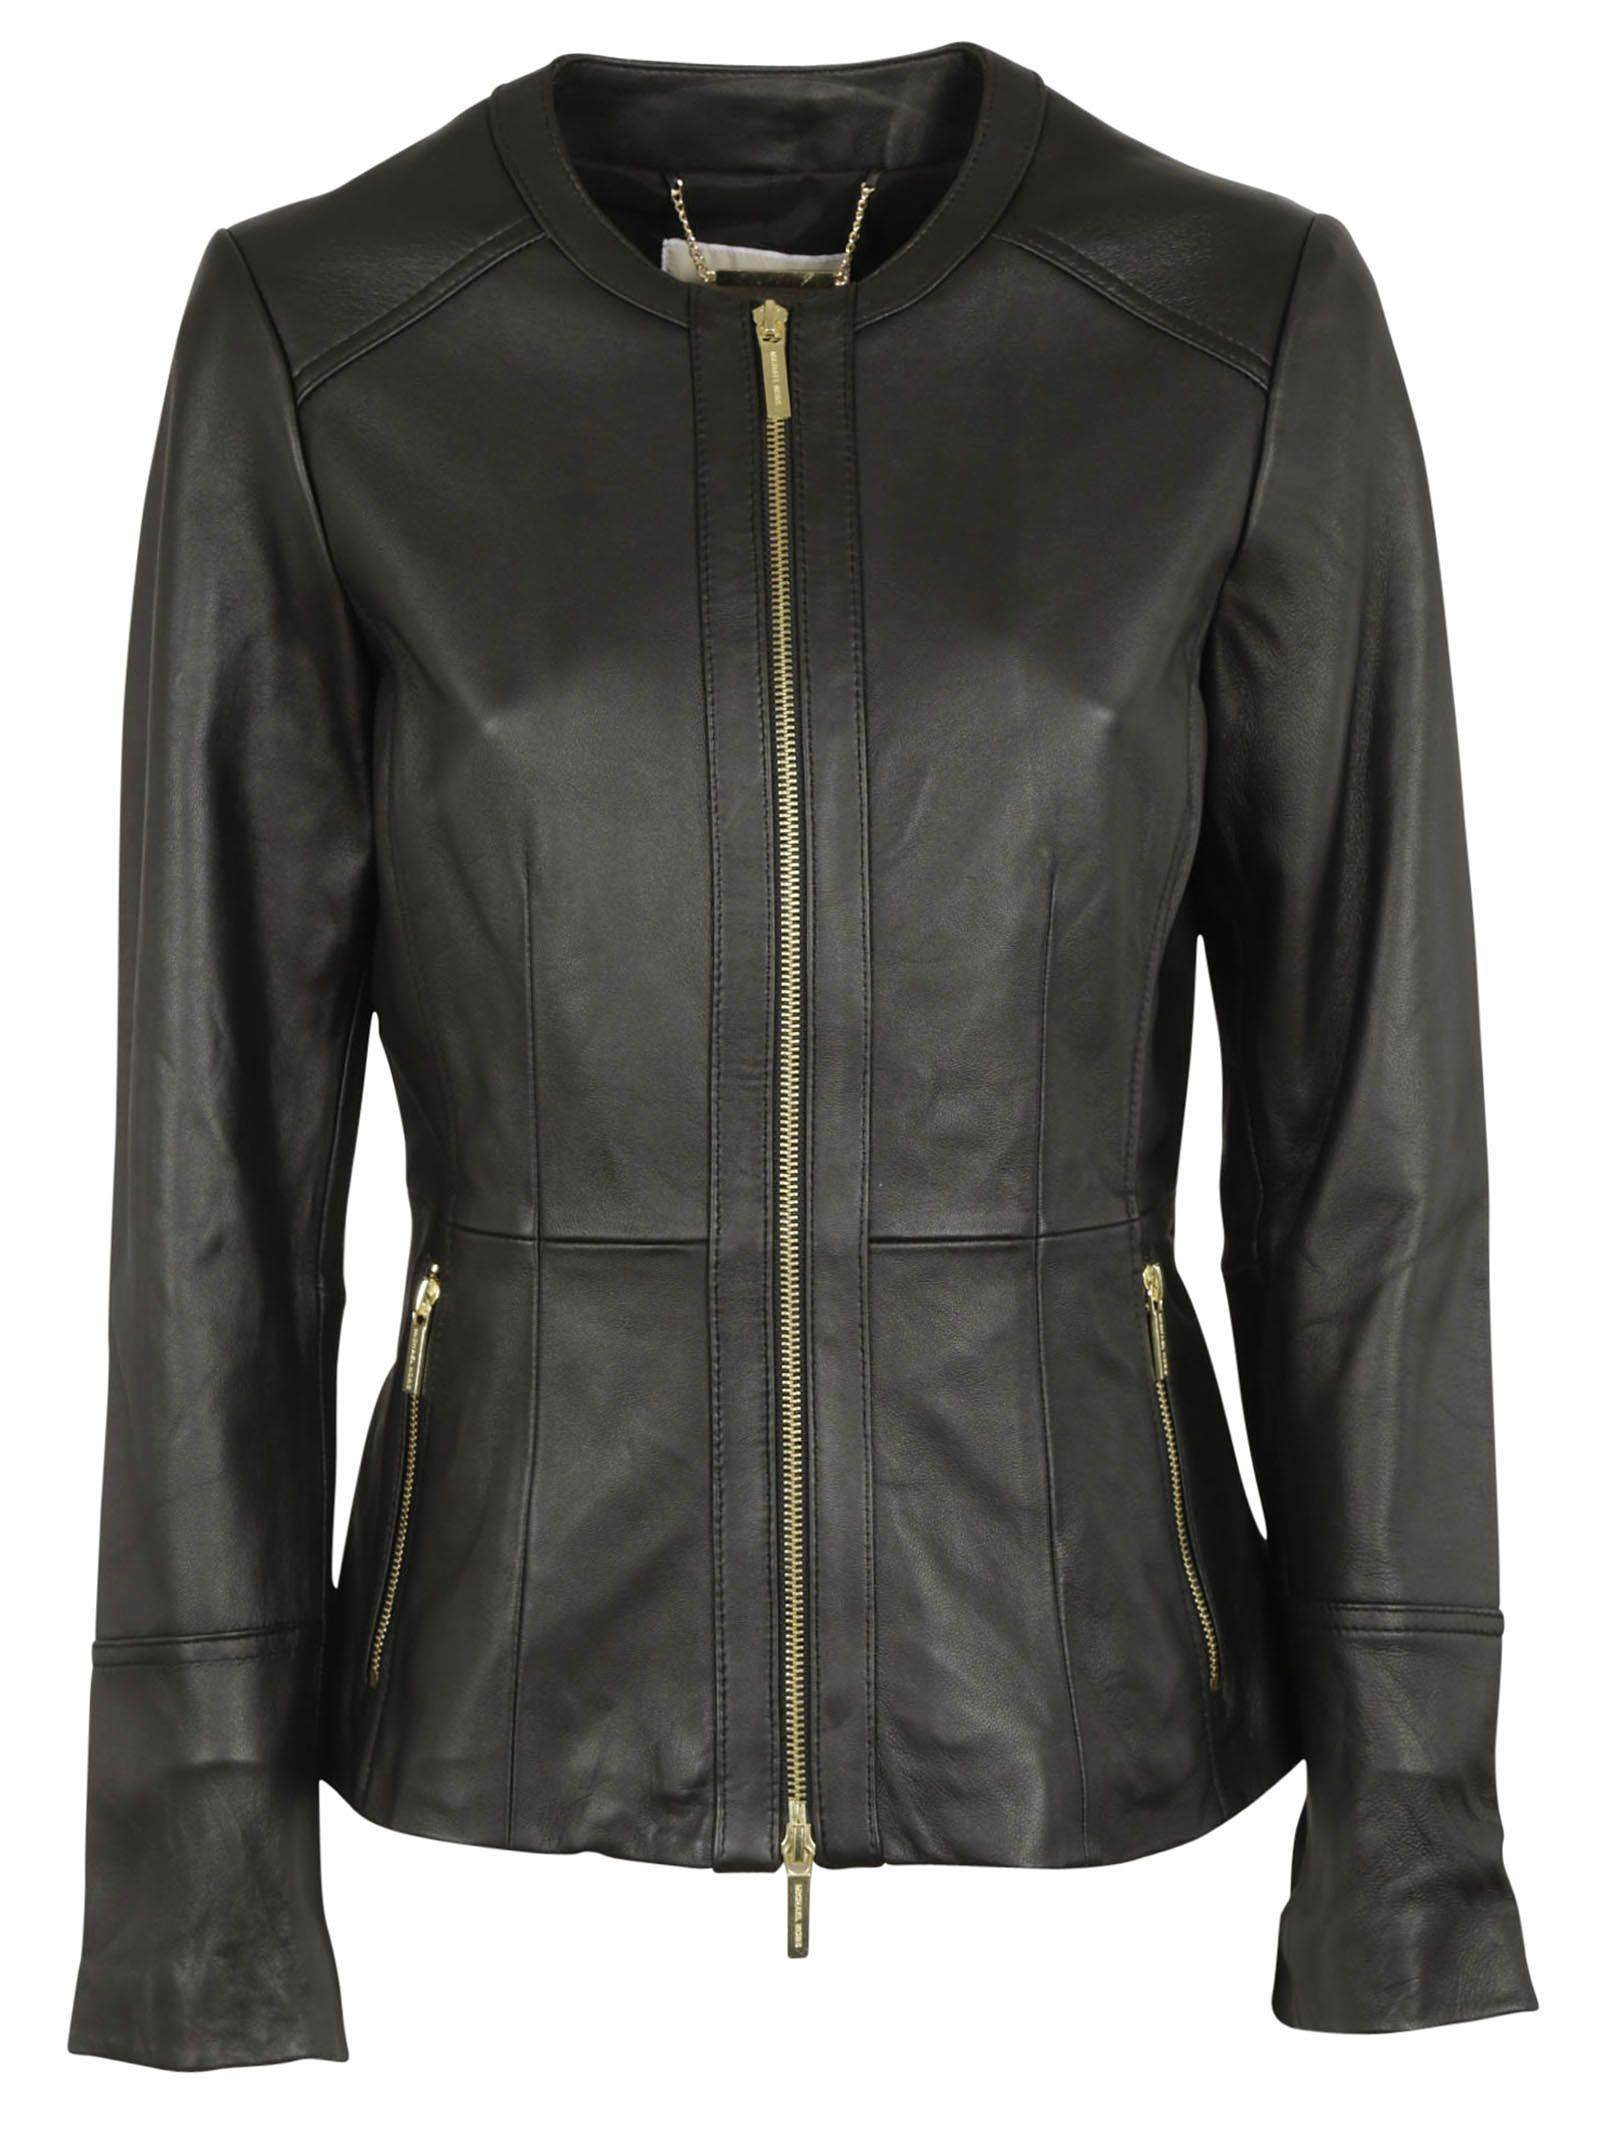 Black Leather Jacket | Italist.com US